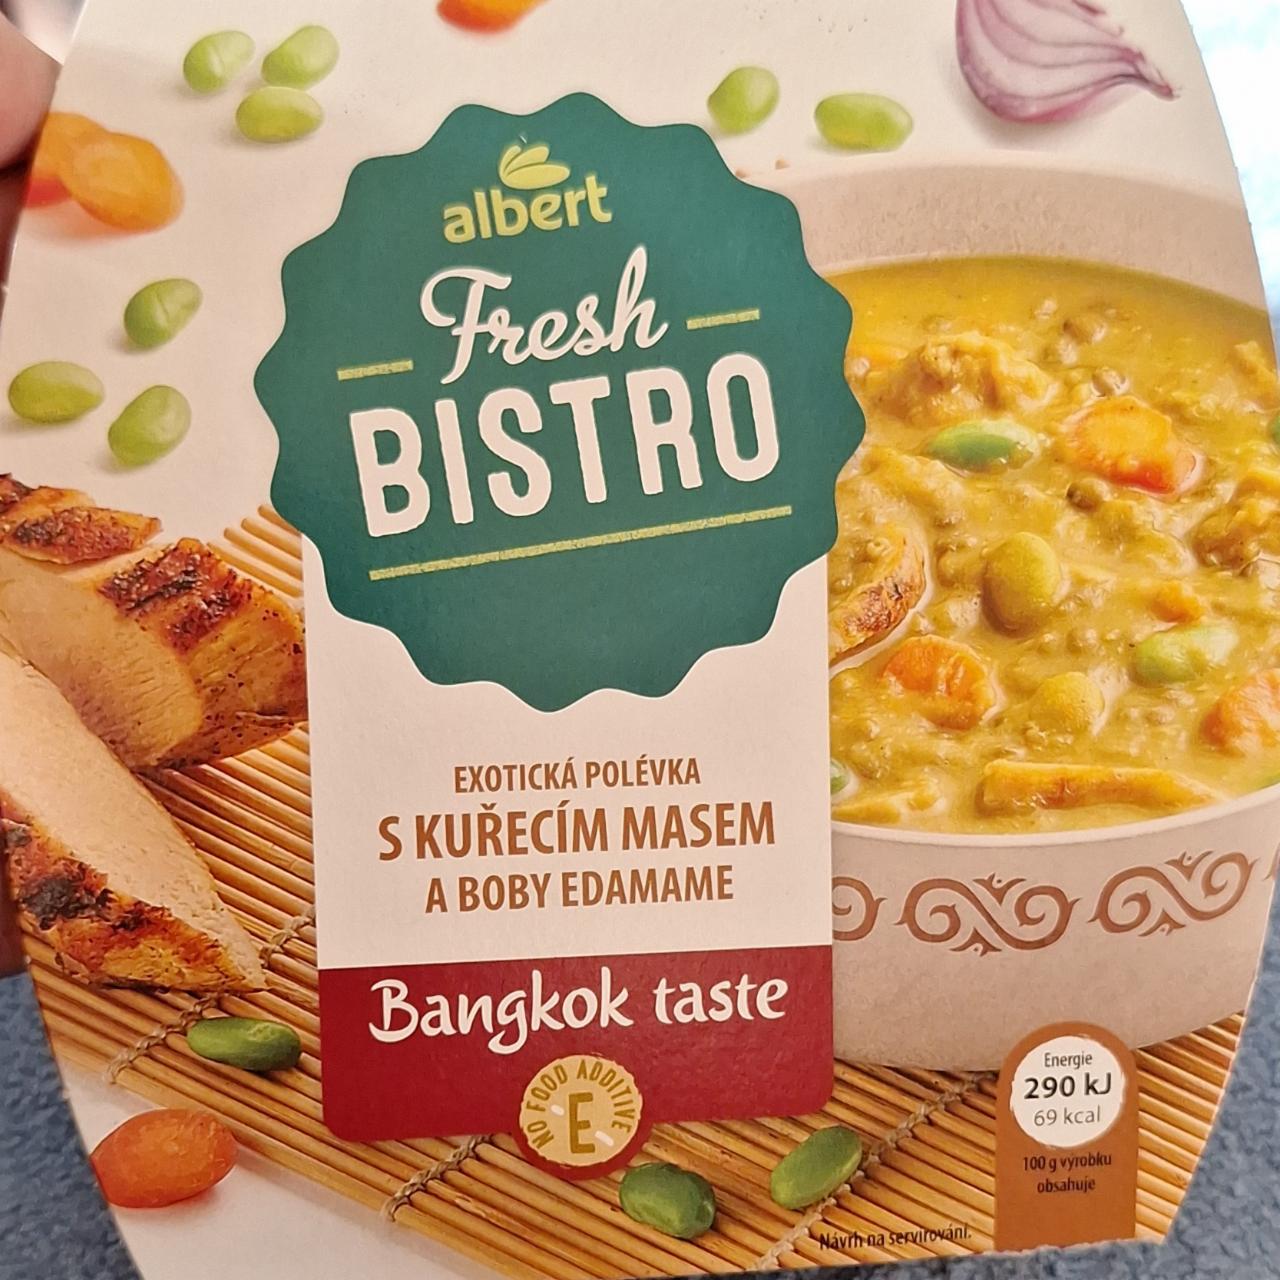 Fotografie - Exotická polévka s kuřecím masem a boby edamame Bangkok taste Albert Fresh Bistro